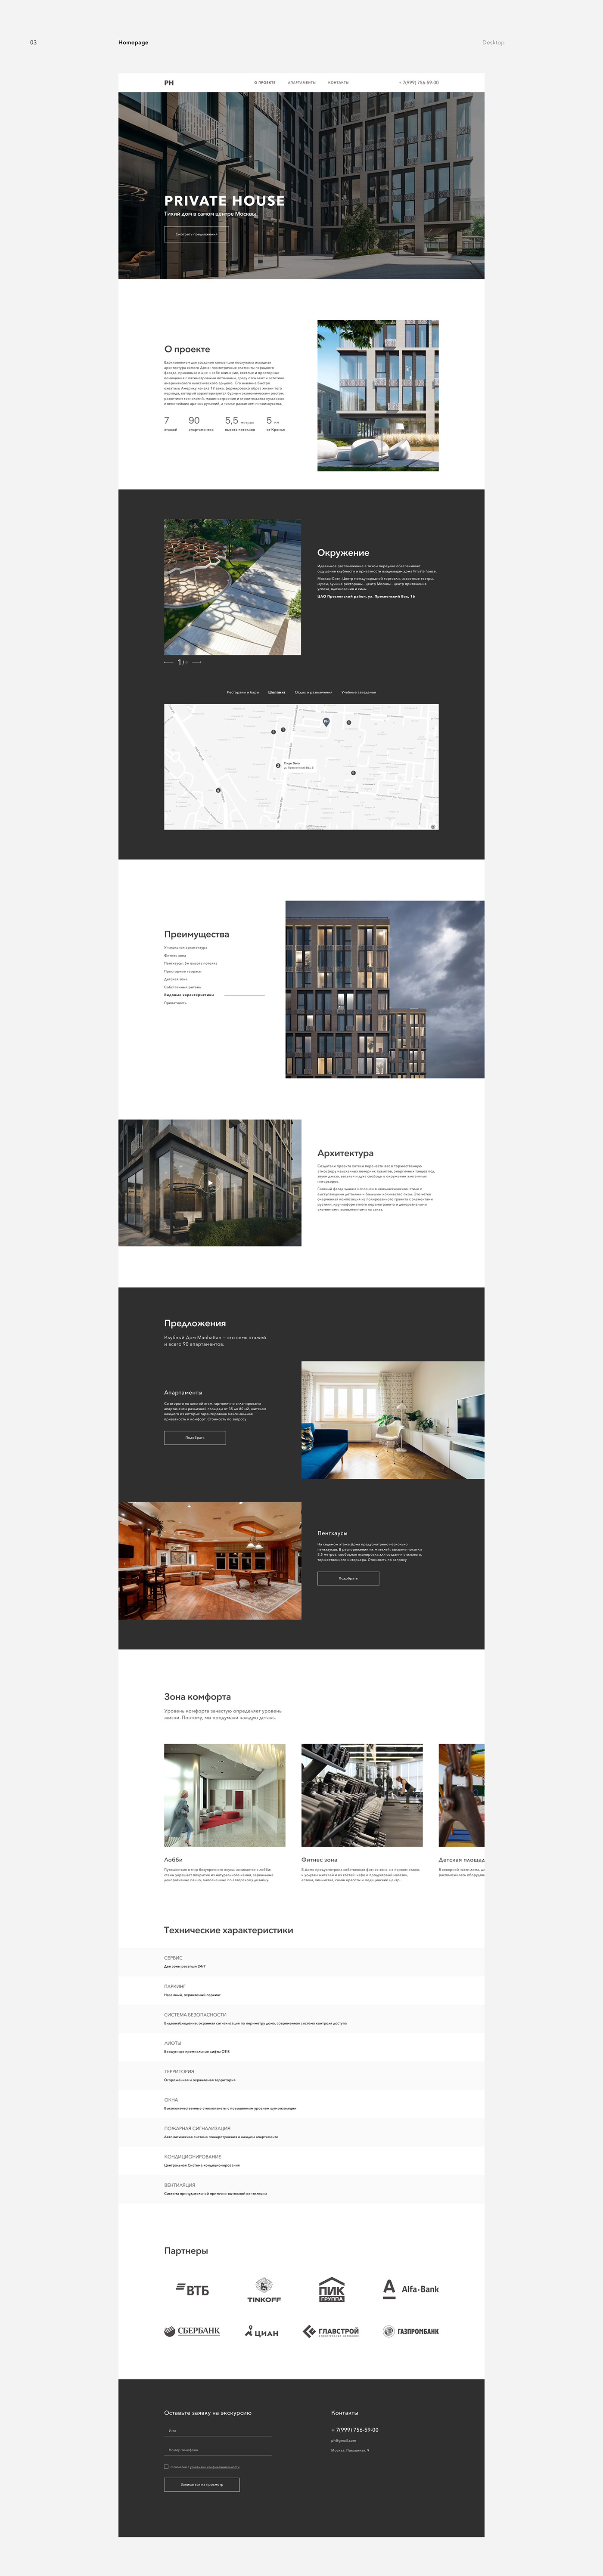 apartment concept house web site